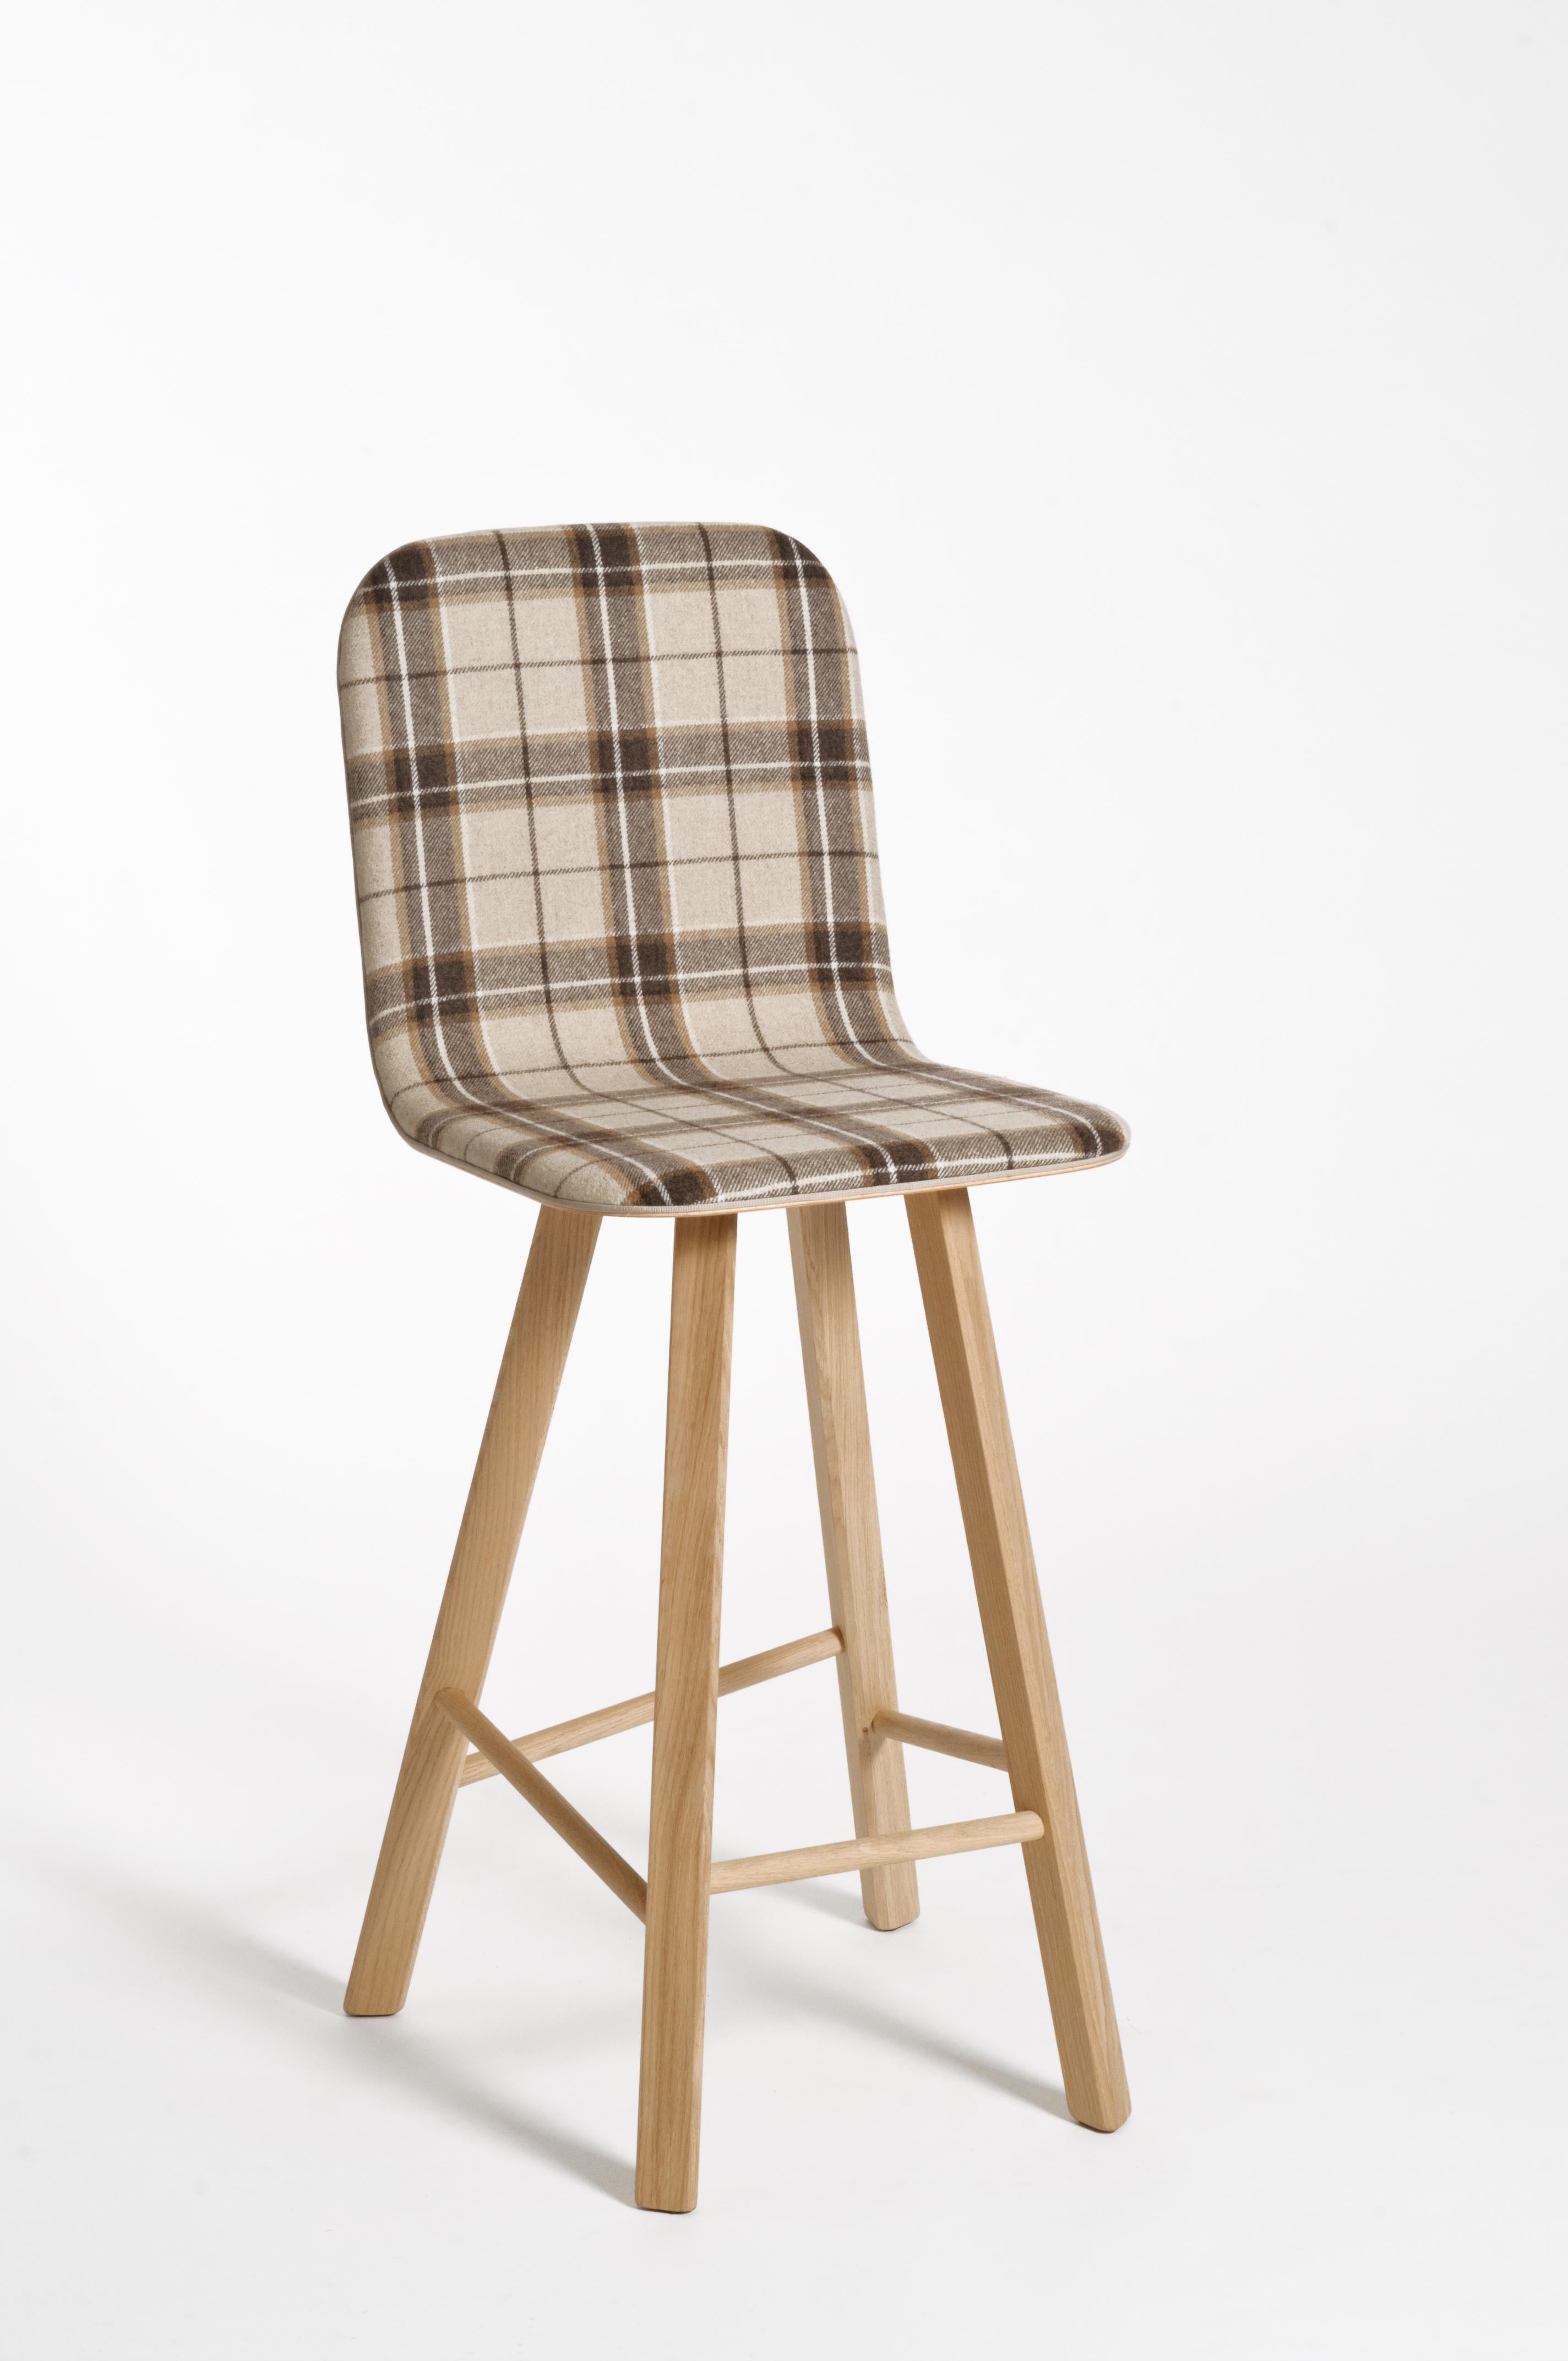 minimalist stools